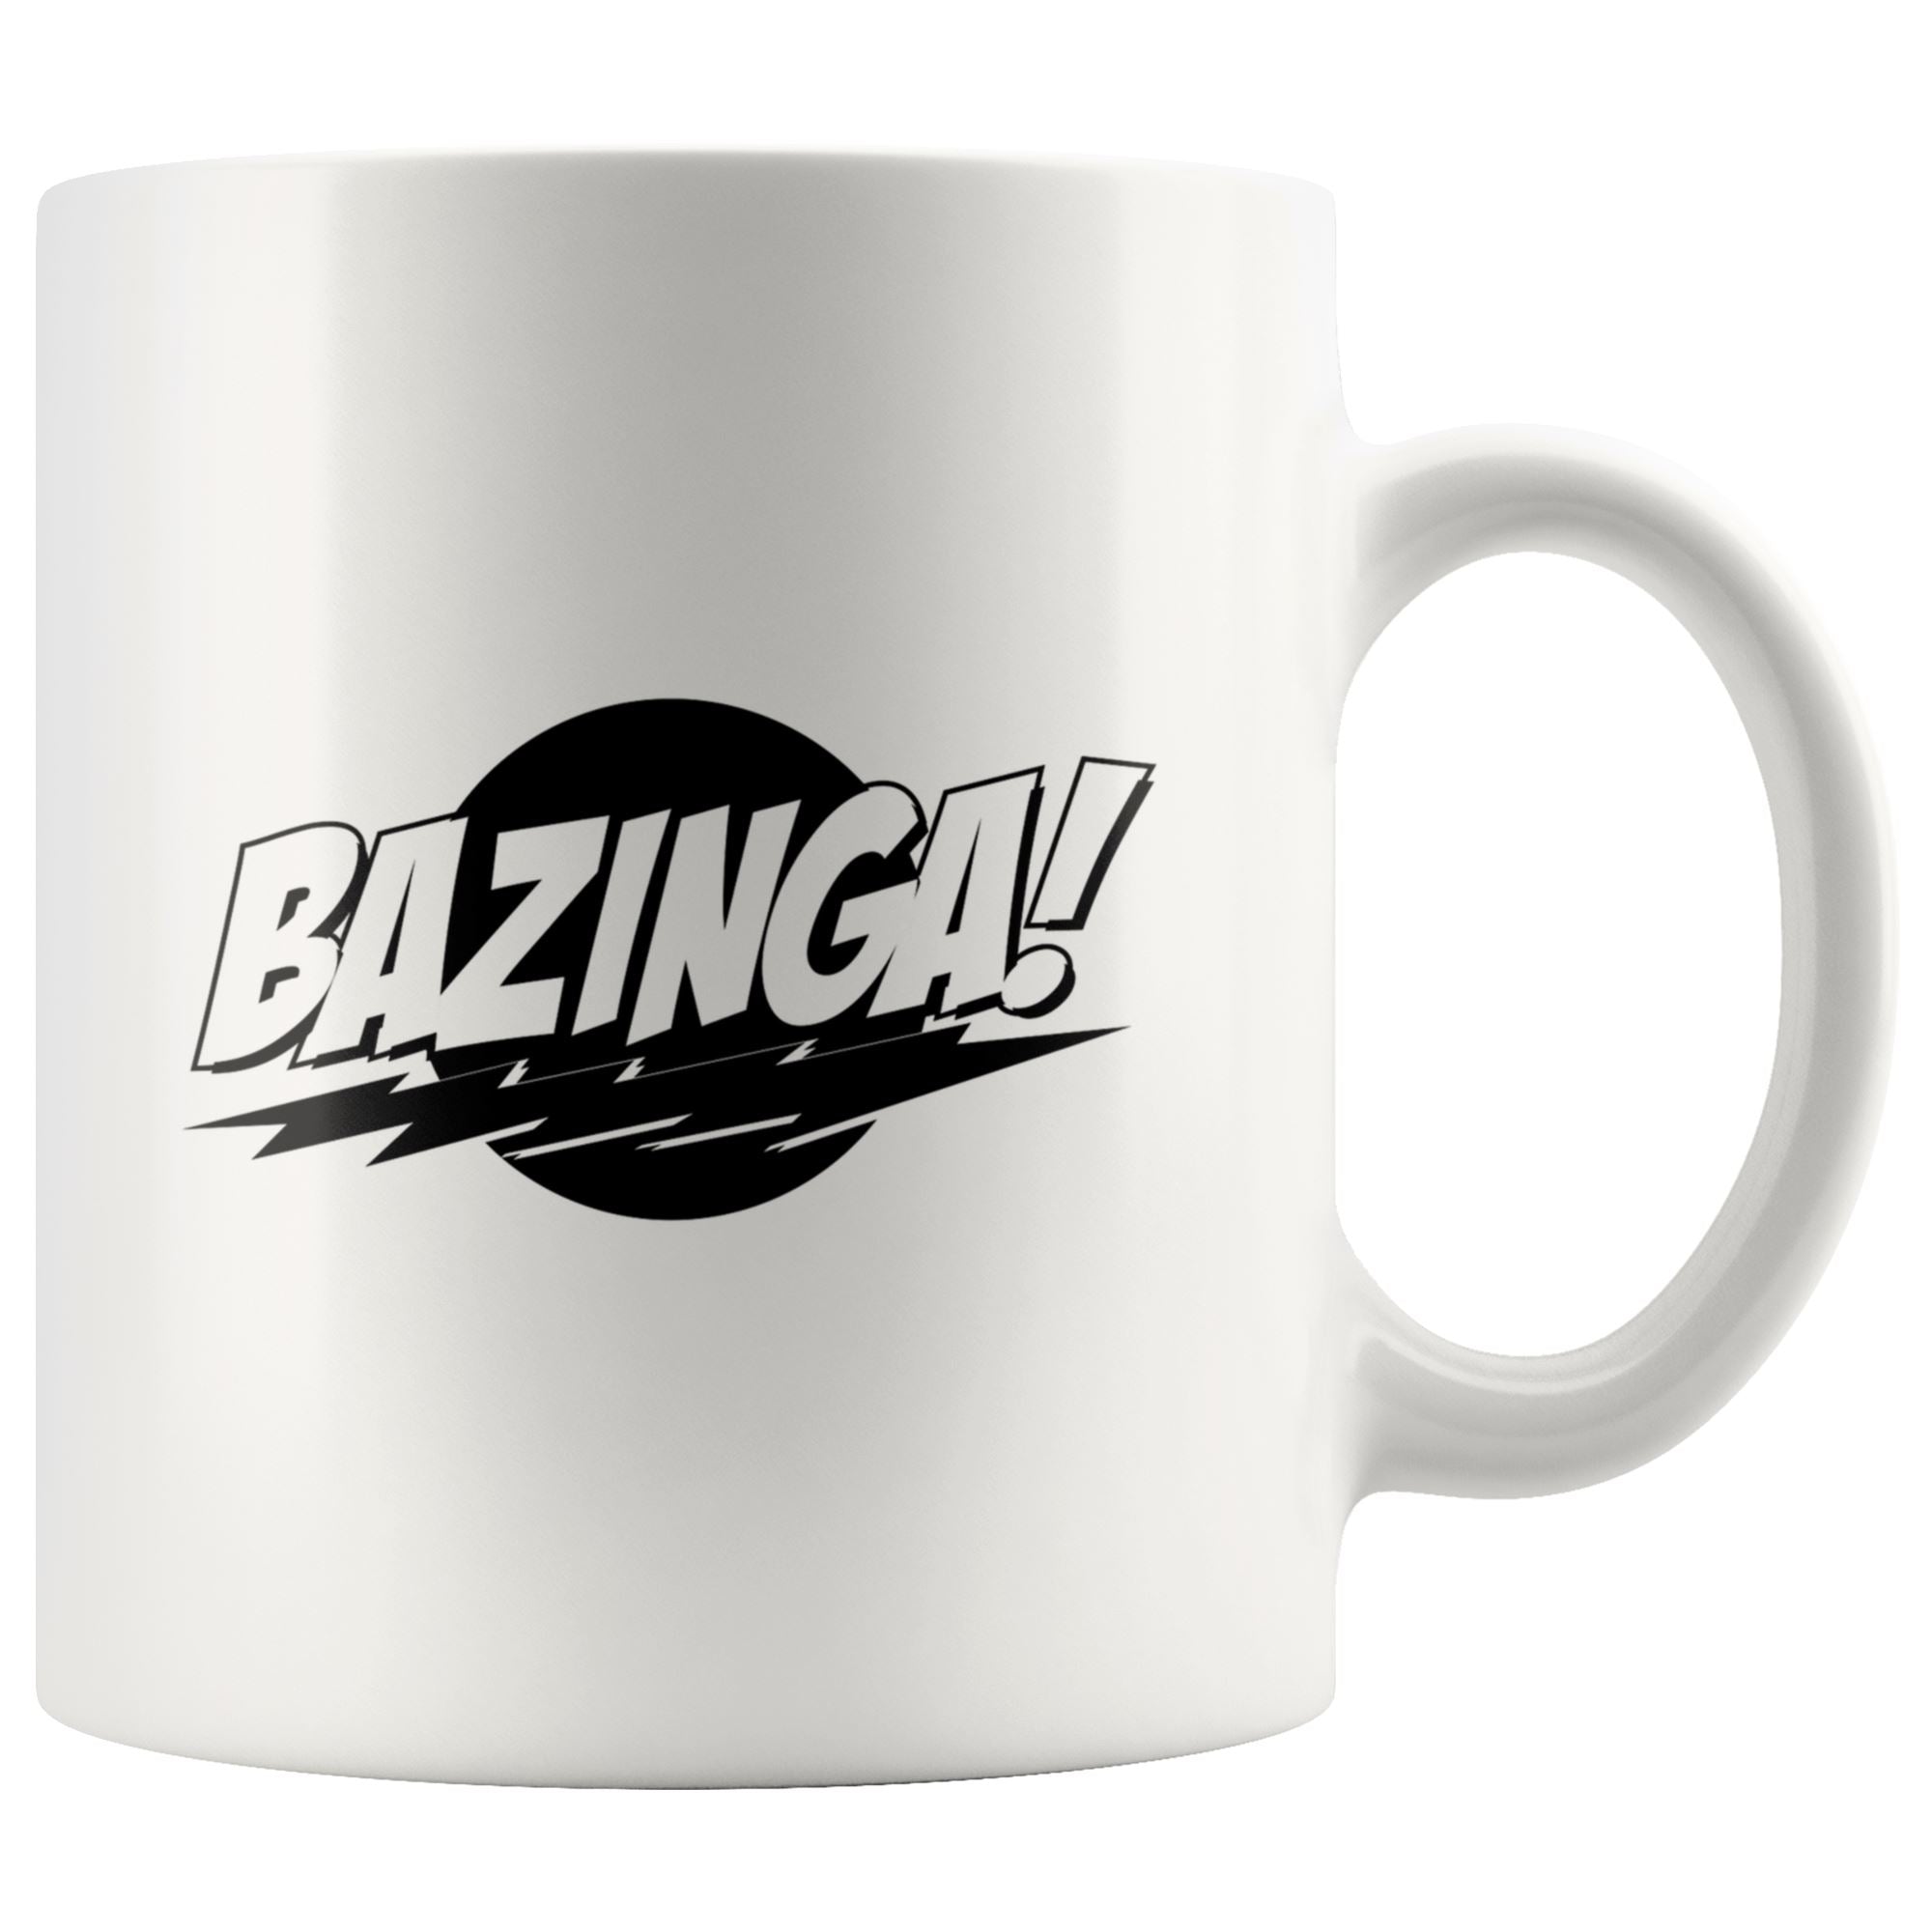 Bazinga Mug Drinkware teelaunch 11oz Mug 